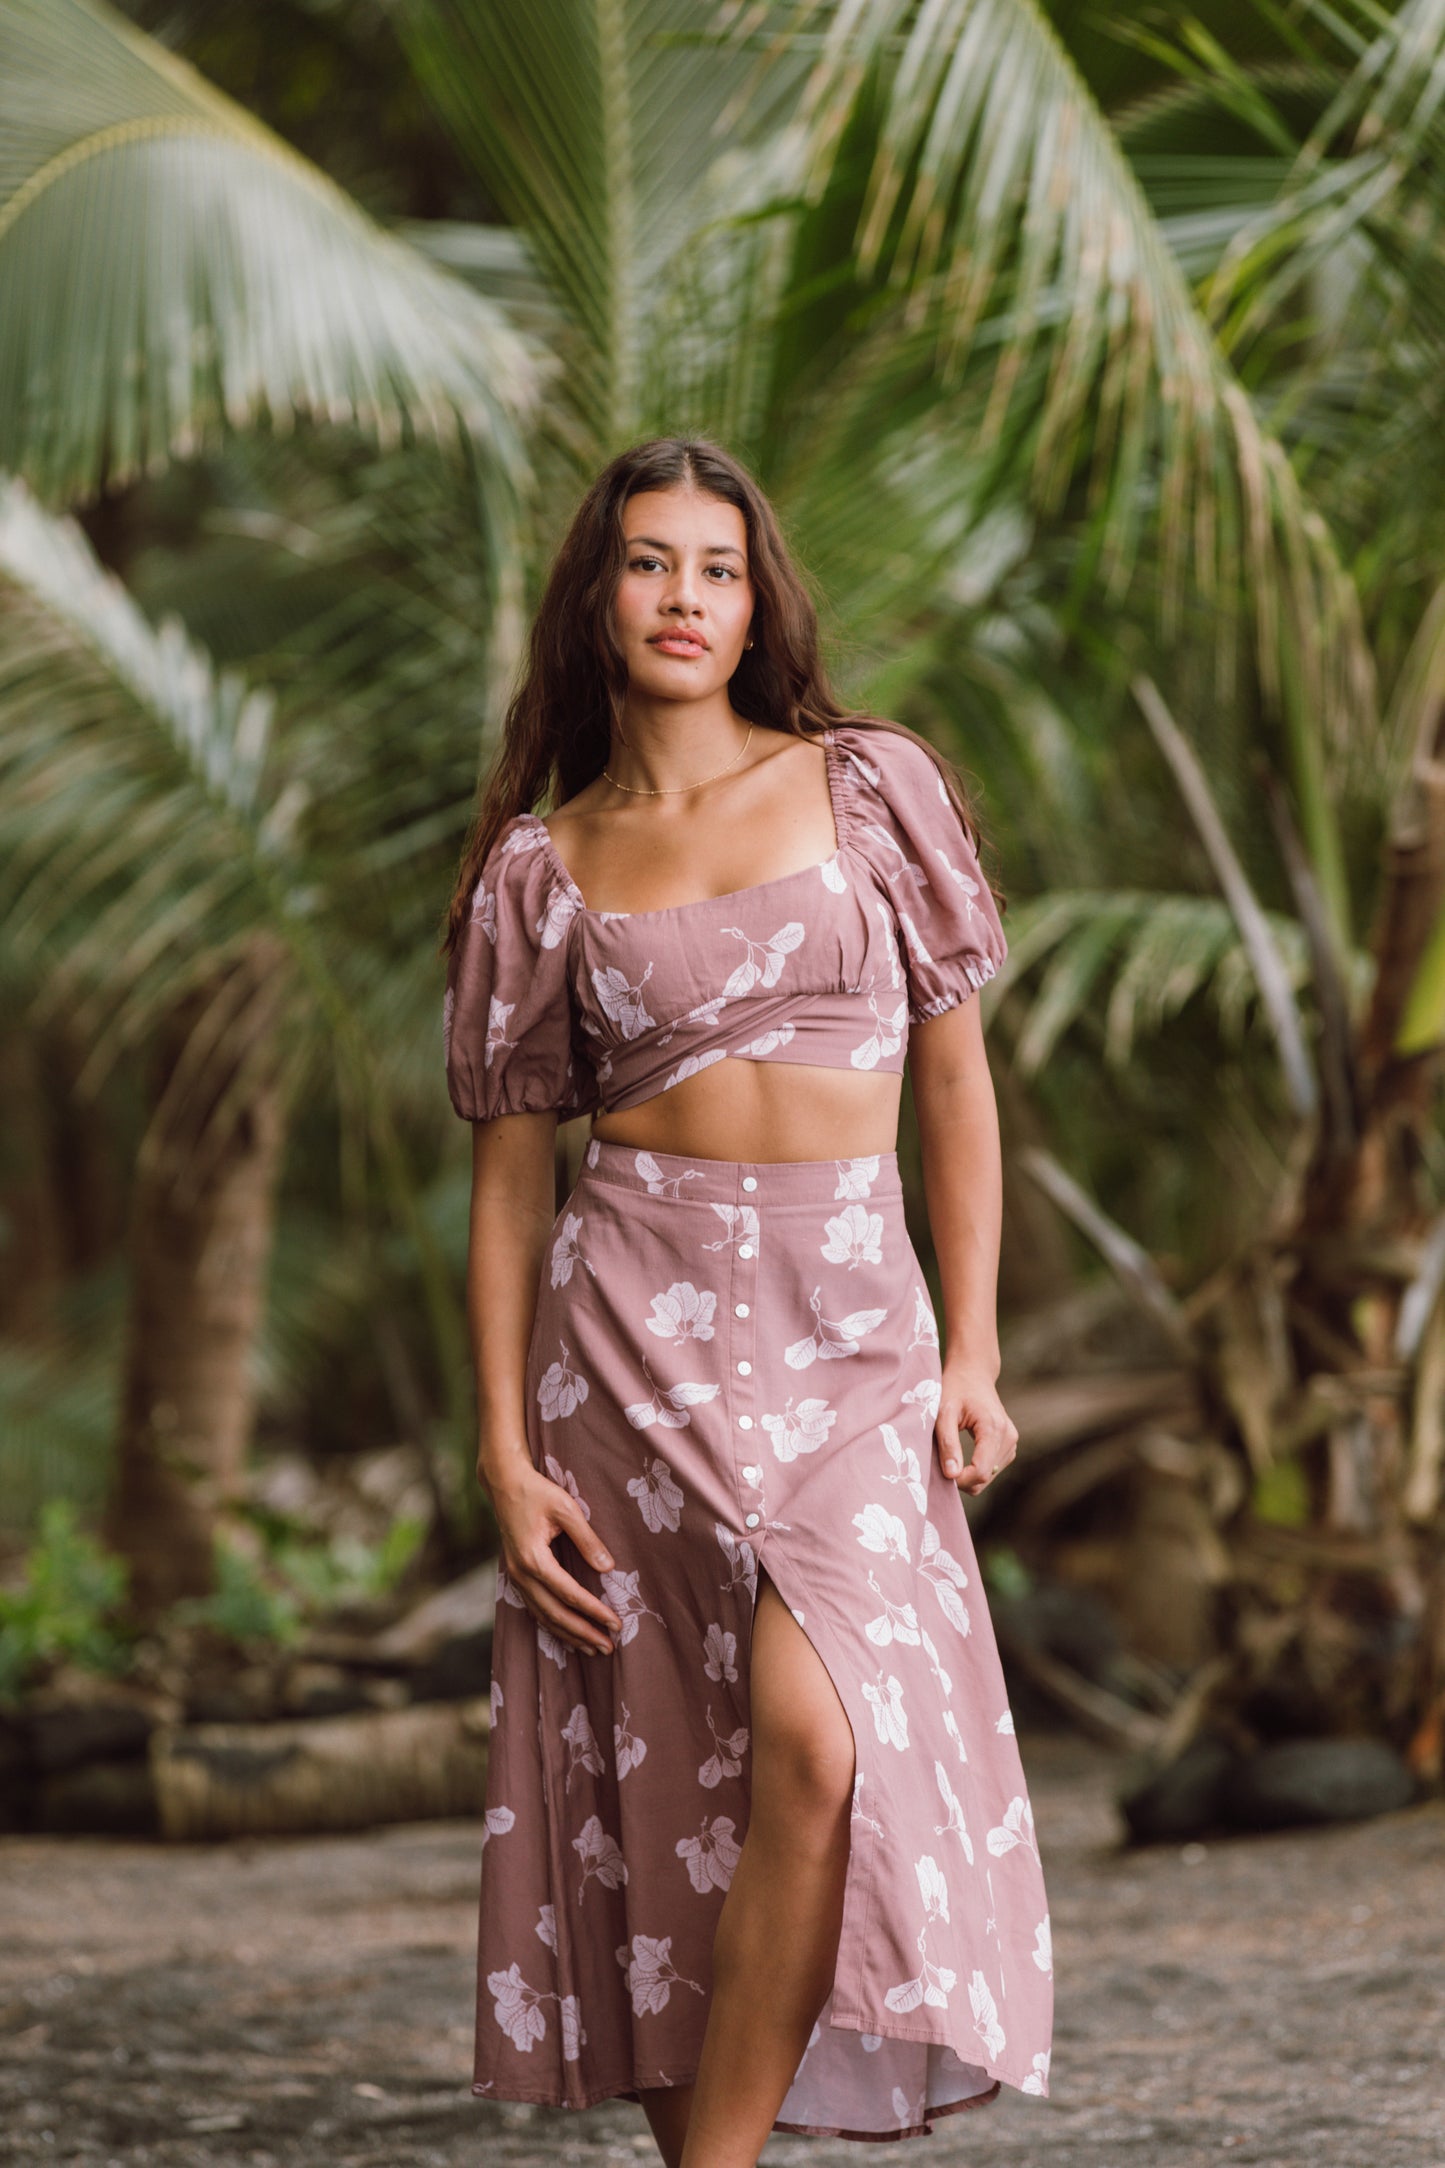 Aloha Skirt- 'Olapa